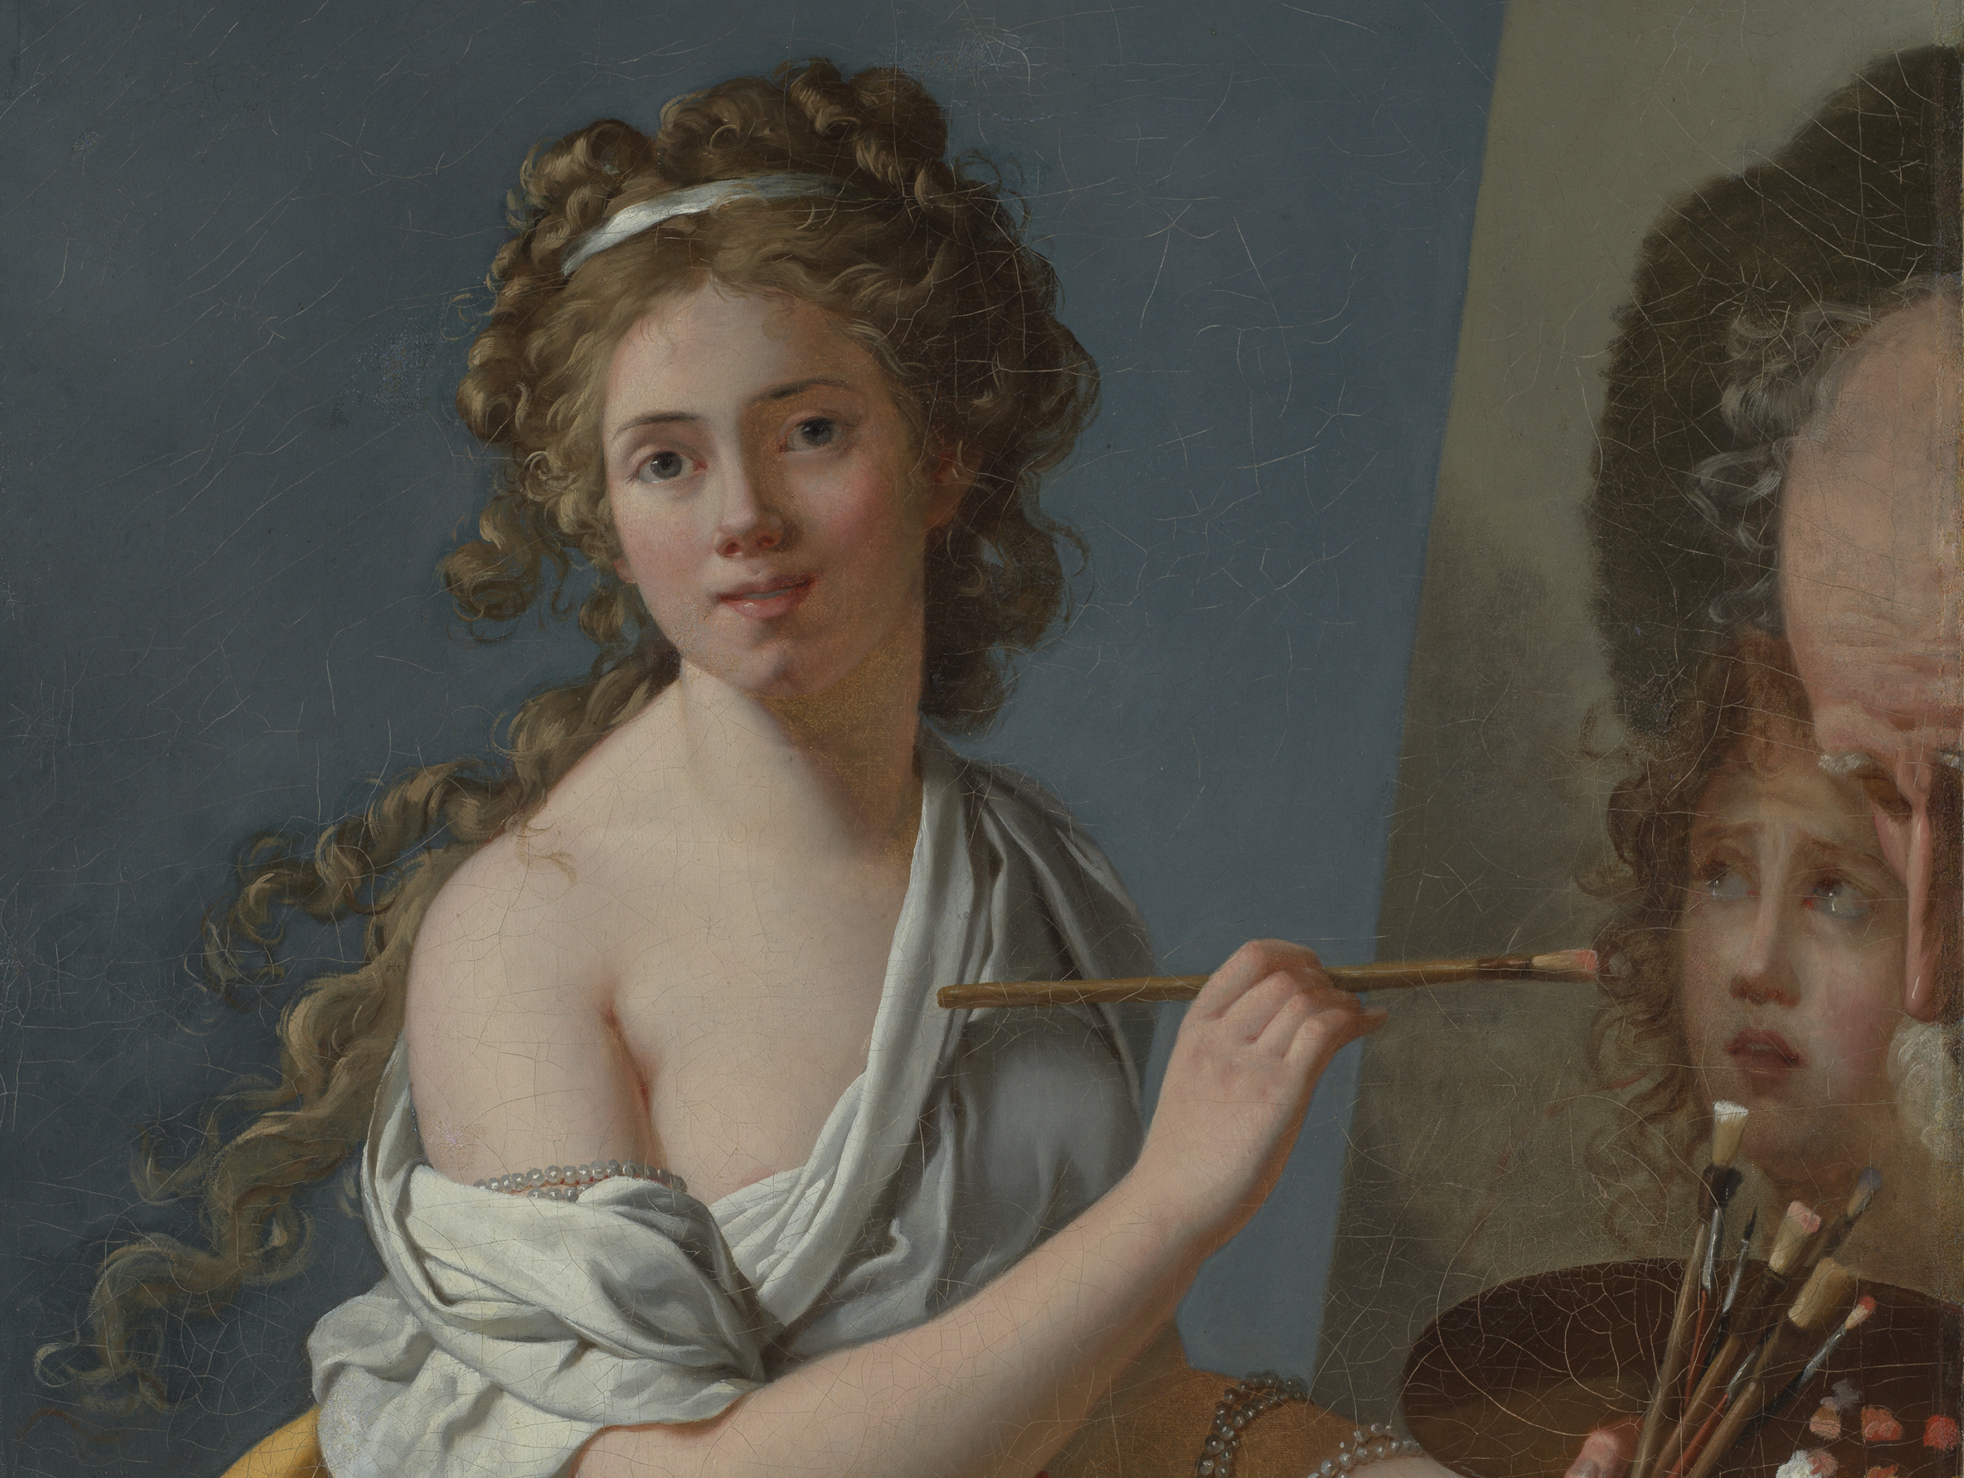 Das Gemälde zeigt eine junge Frau vor einer Staffelei sitzend und ein Gemälde malend.